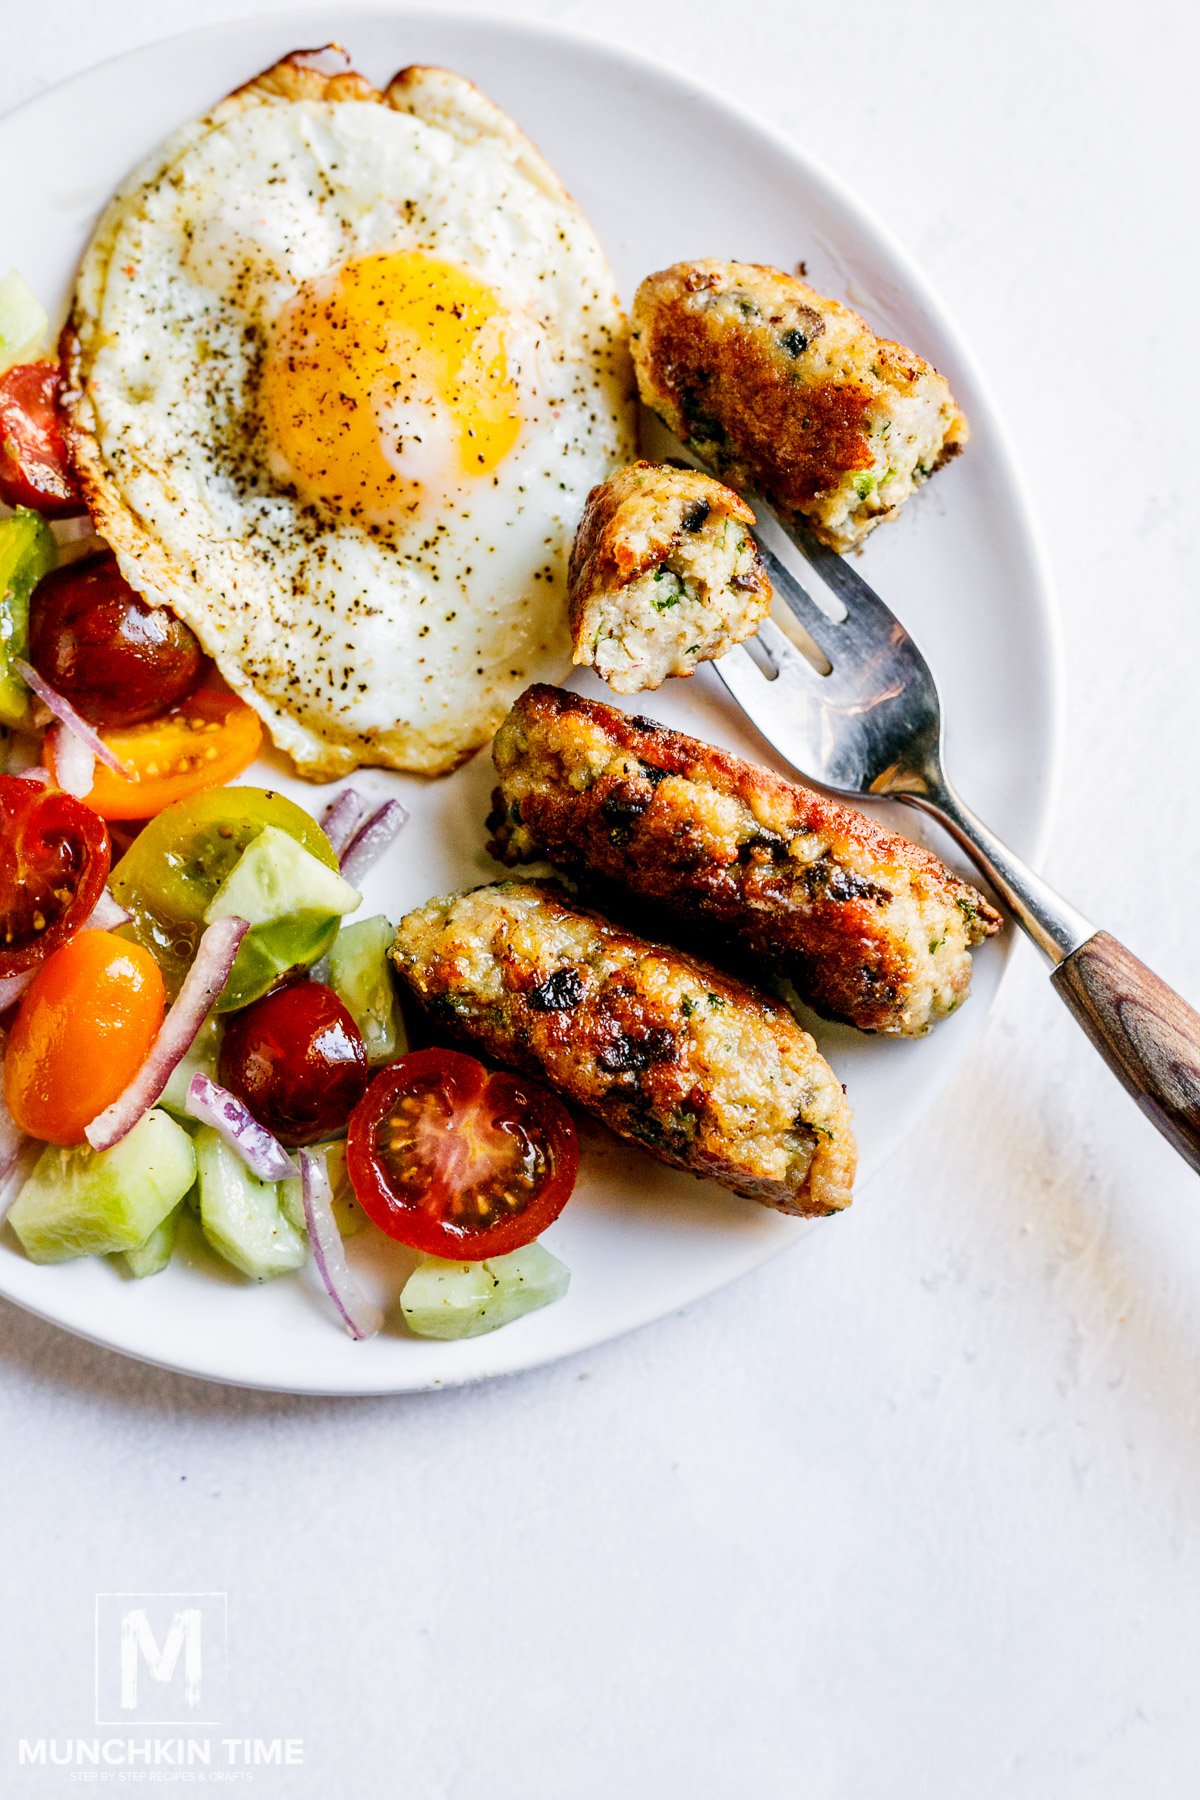 30-minute Chicken Breakfast Sausage Recipe - Munchkin Time